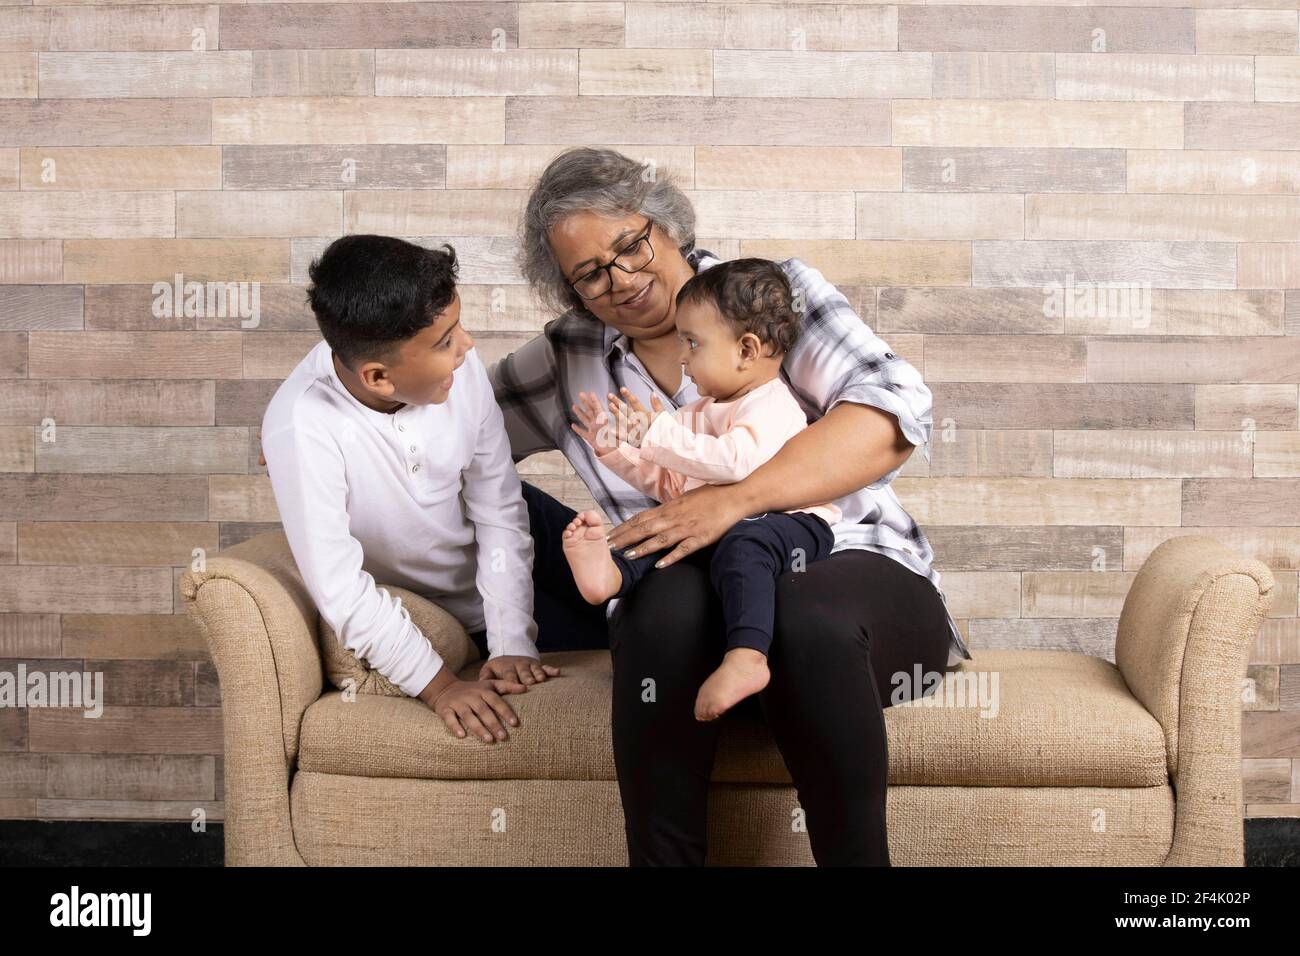 Glückliche Momente mit Oma, indische oder asiatische ältere Dame verbringen gute Zeit mit ihren Enkeln Stockfoto